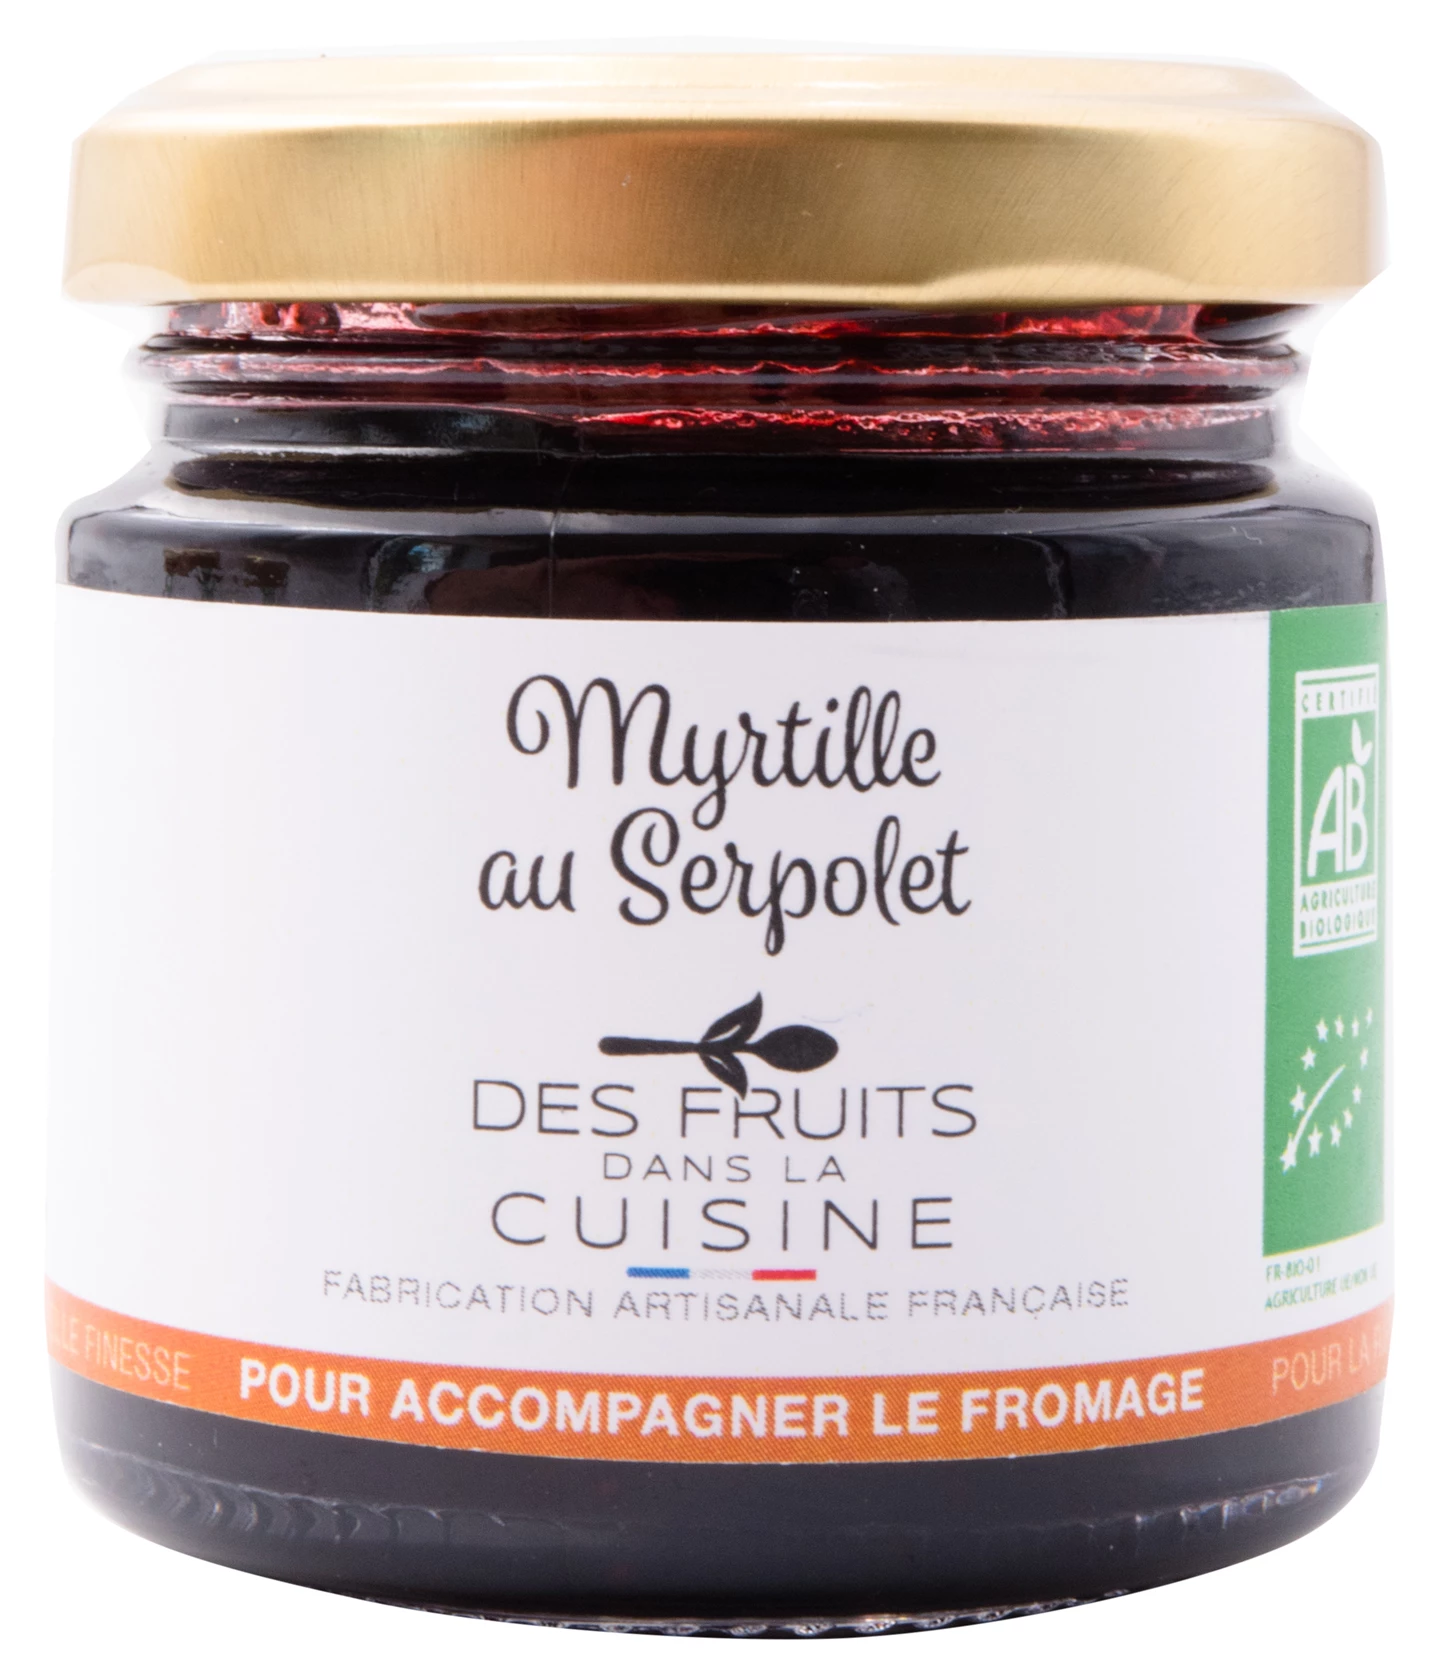 Løgismose Delikatesser Des Fruits Dans La Cuisine Blåbærmarmelade med timian til ost 110g ØKO - 219177